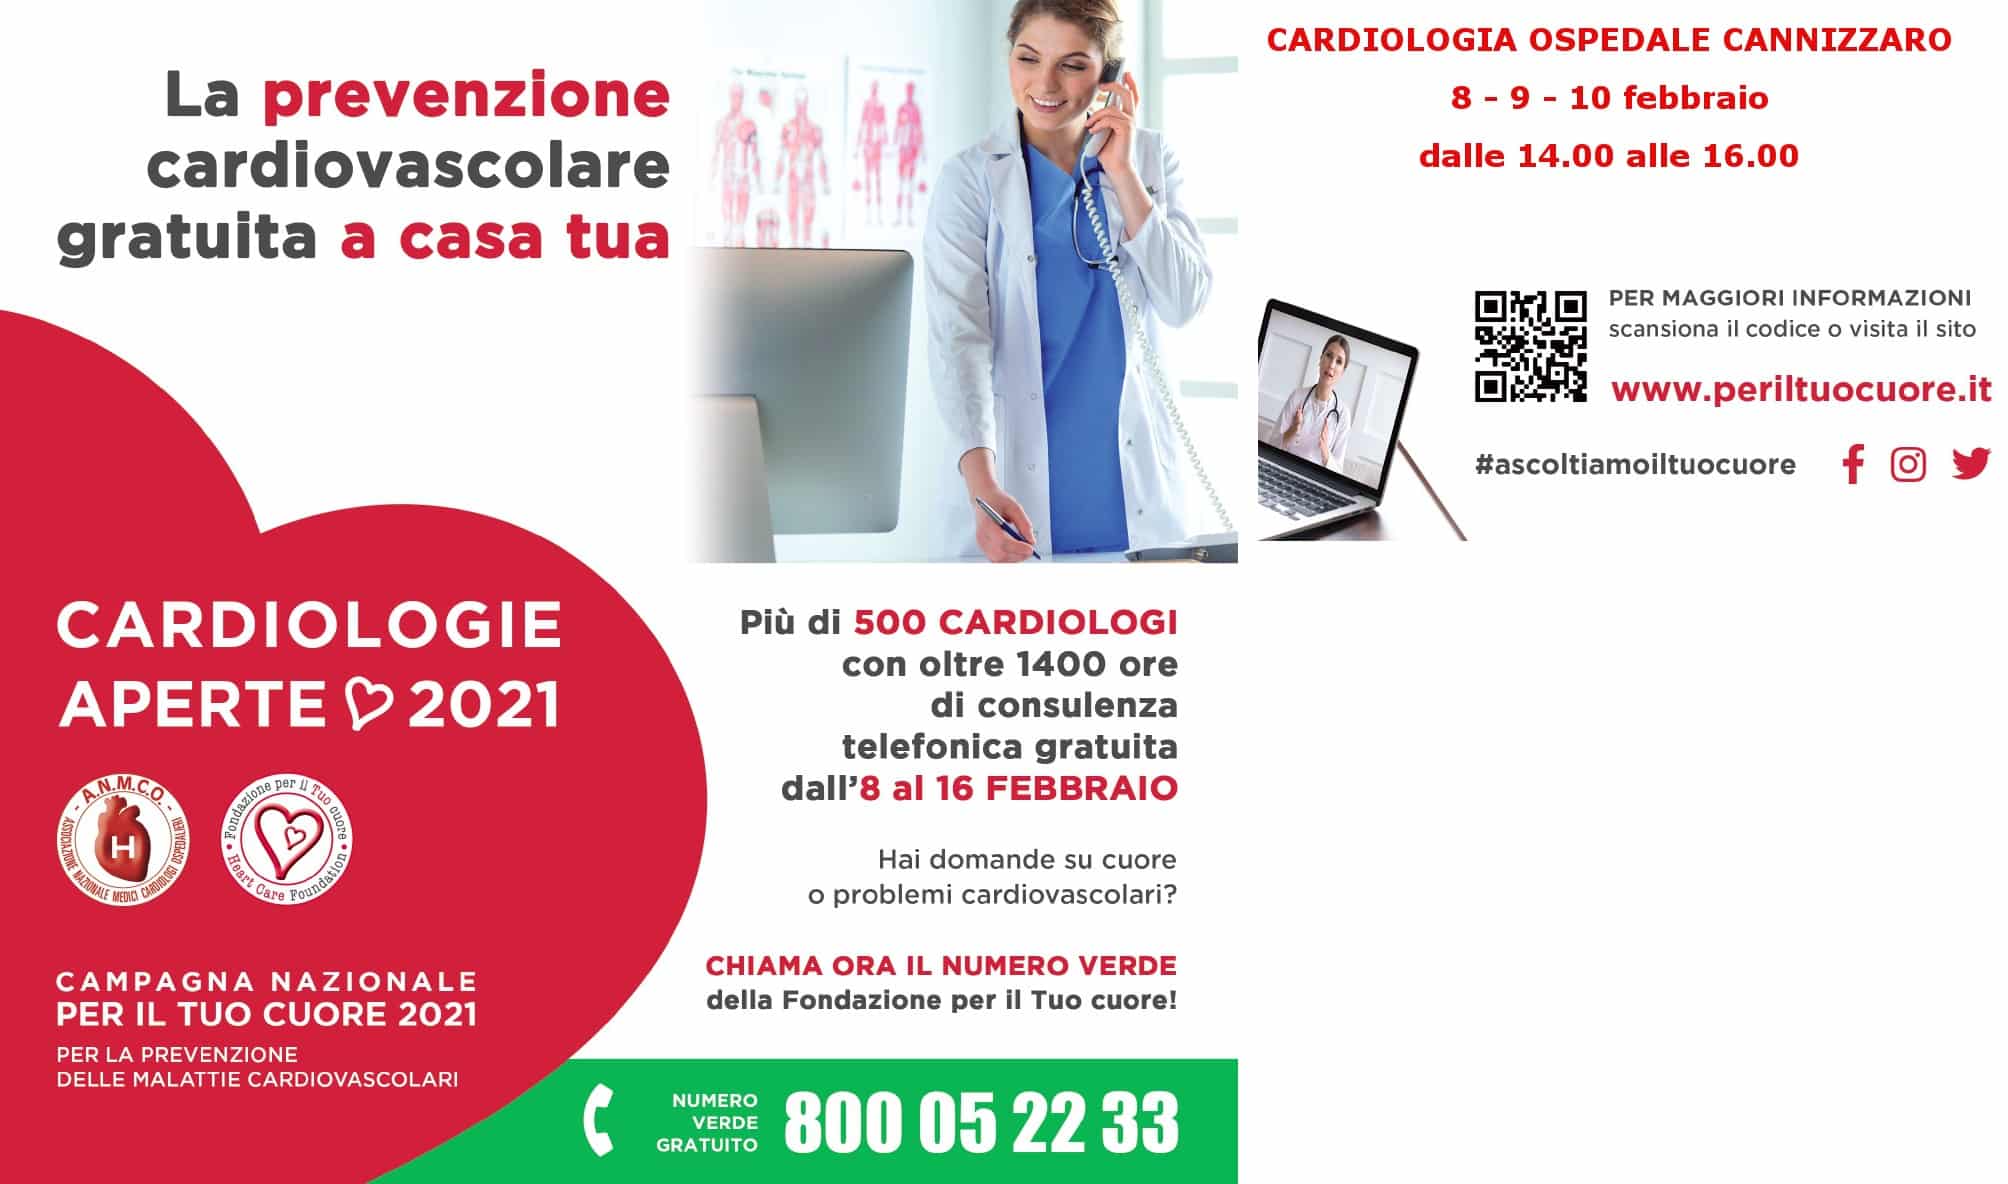 Catania, l’ospedale Cannizzaro aderisce alla campagna nazionale di prevenzione “Cardiologie aperte”: 3 giorni di consulti telefonici gratuiti